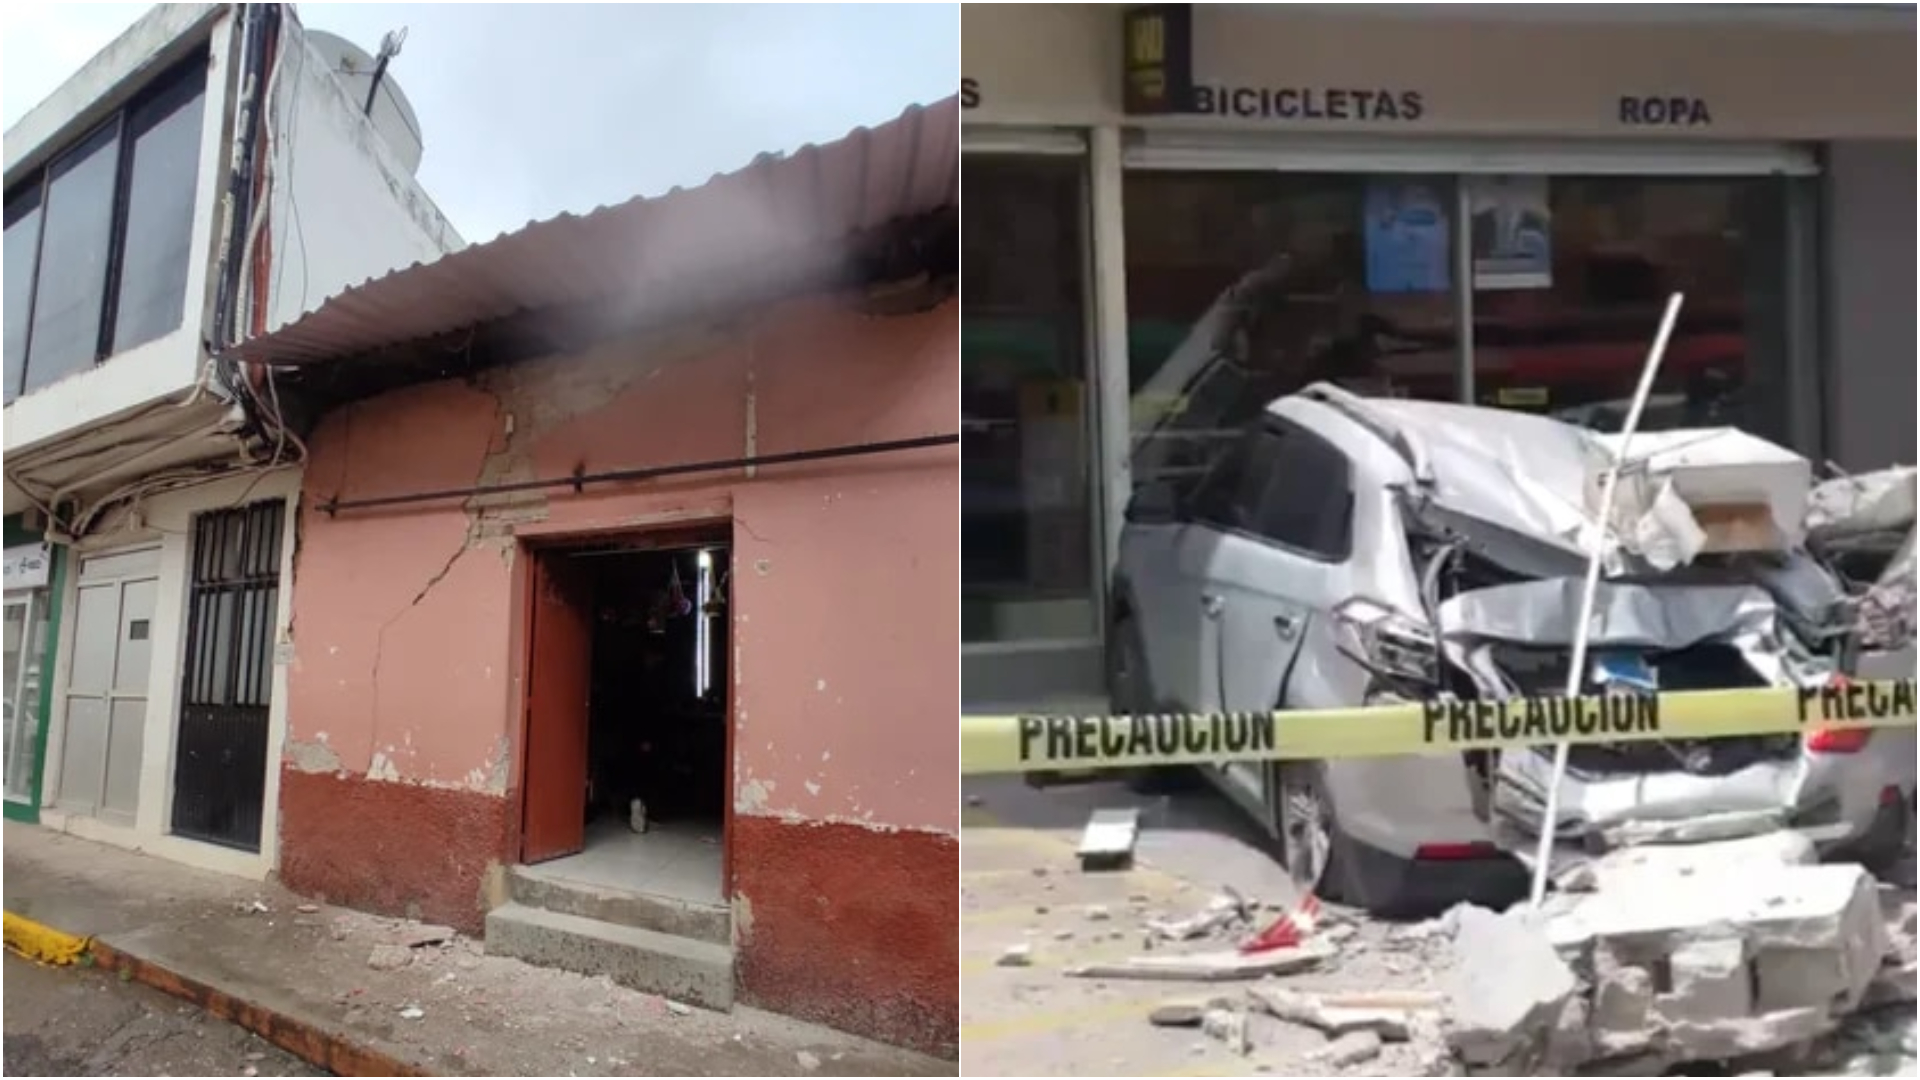 Daños por los últimos temblores que ocurrieron en el mes de septiembre en los estados de Colima y Michoacán respectivamente.
(Fotos: SSP Michoacán y Facebook)